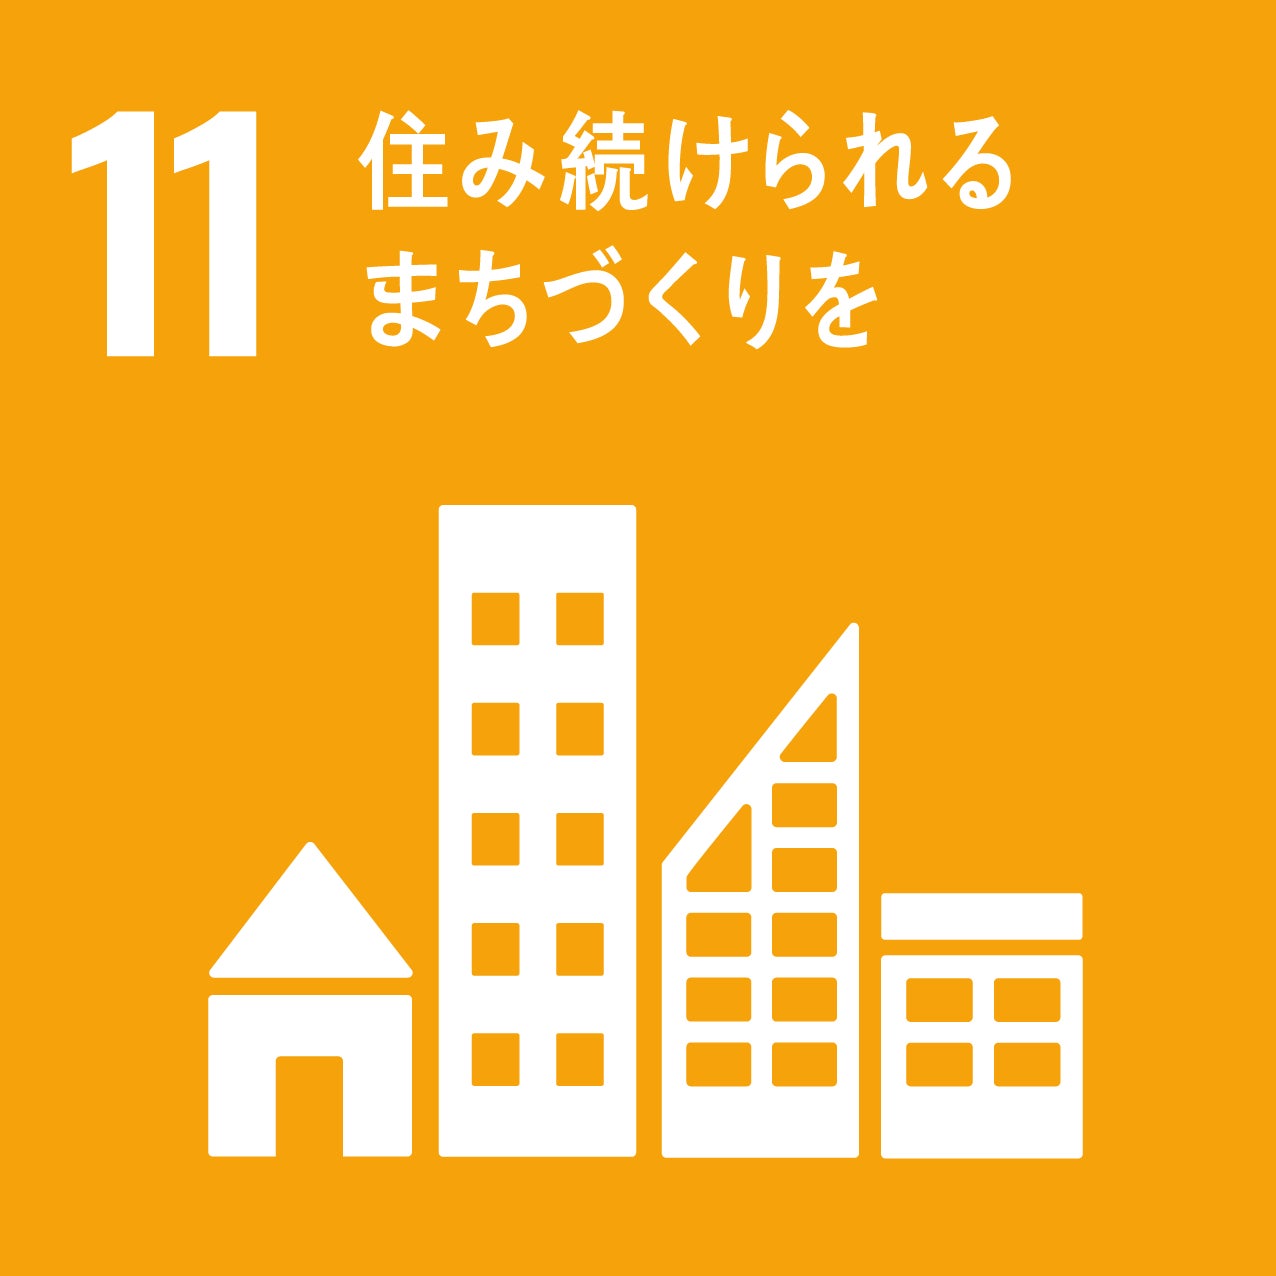 奈良女子大学「奈良の食プロジェクト」×奈良ホテル　奈良の食材にこだわりぬいたテイクアウト弁当「まほろば行楽弁当」共同開発についてのサブ画像5